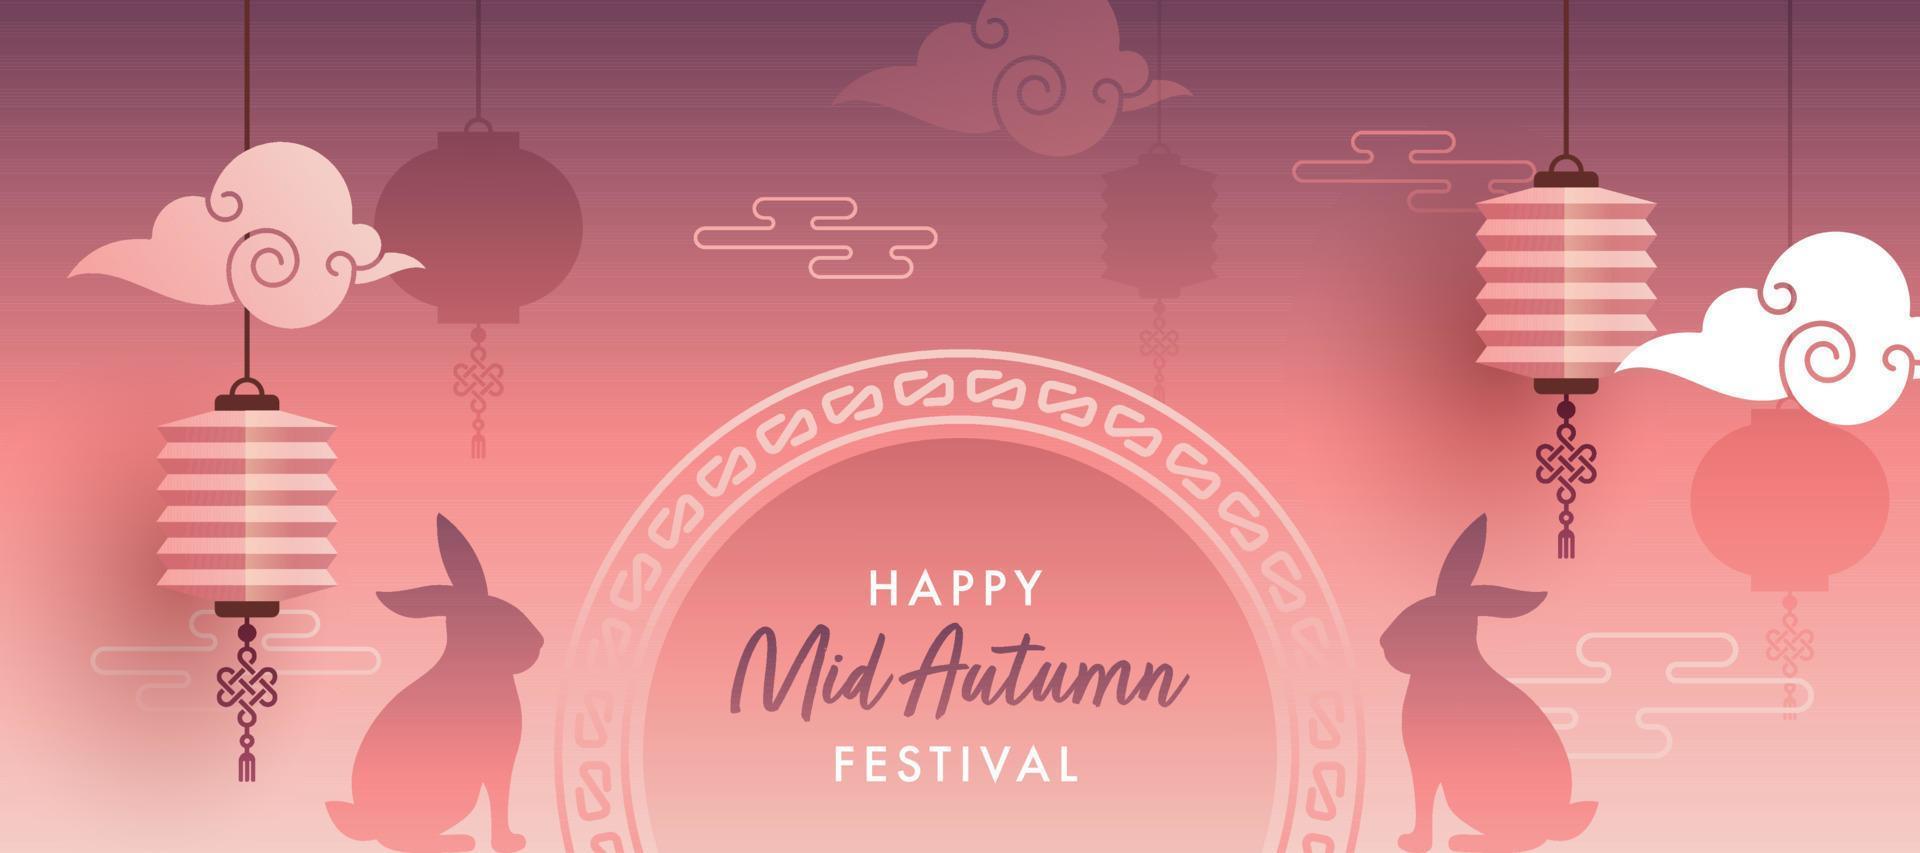 contento medio otoño festival encabezamiento o bandera diseño con silueta conejitos, nubes y colgando chino linternas en degradado ligero rojo y púrpura antecedentes. vector